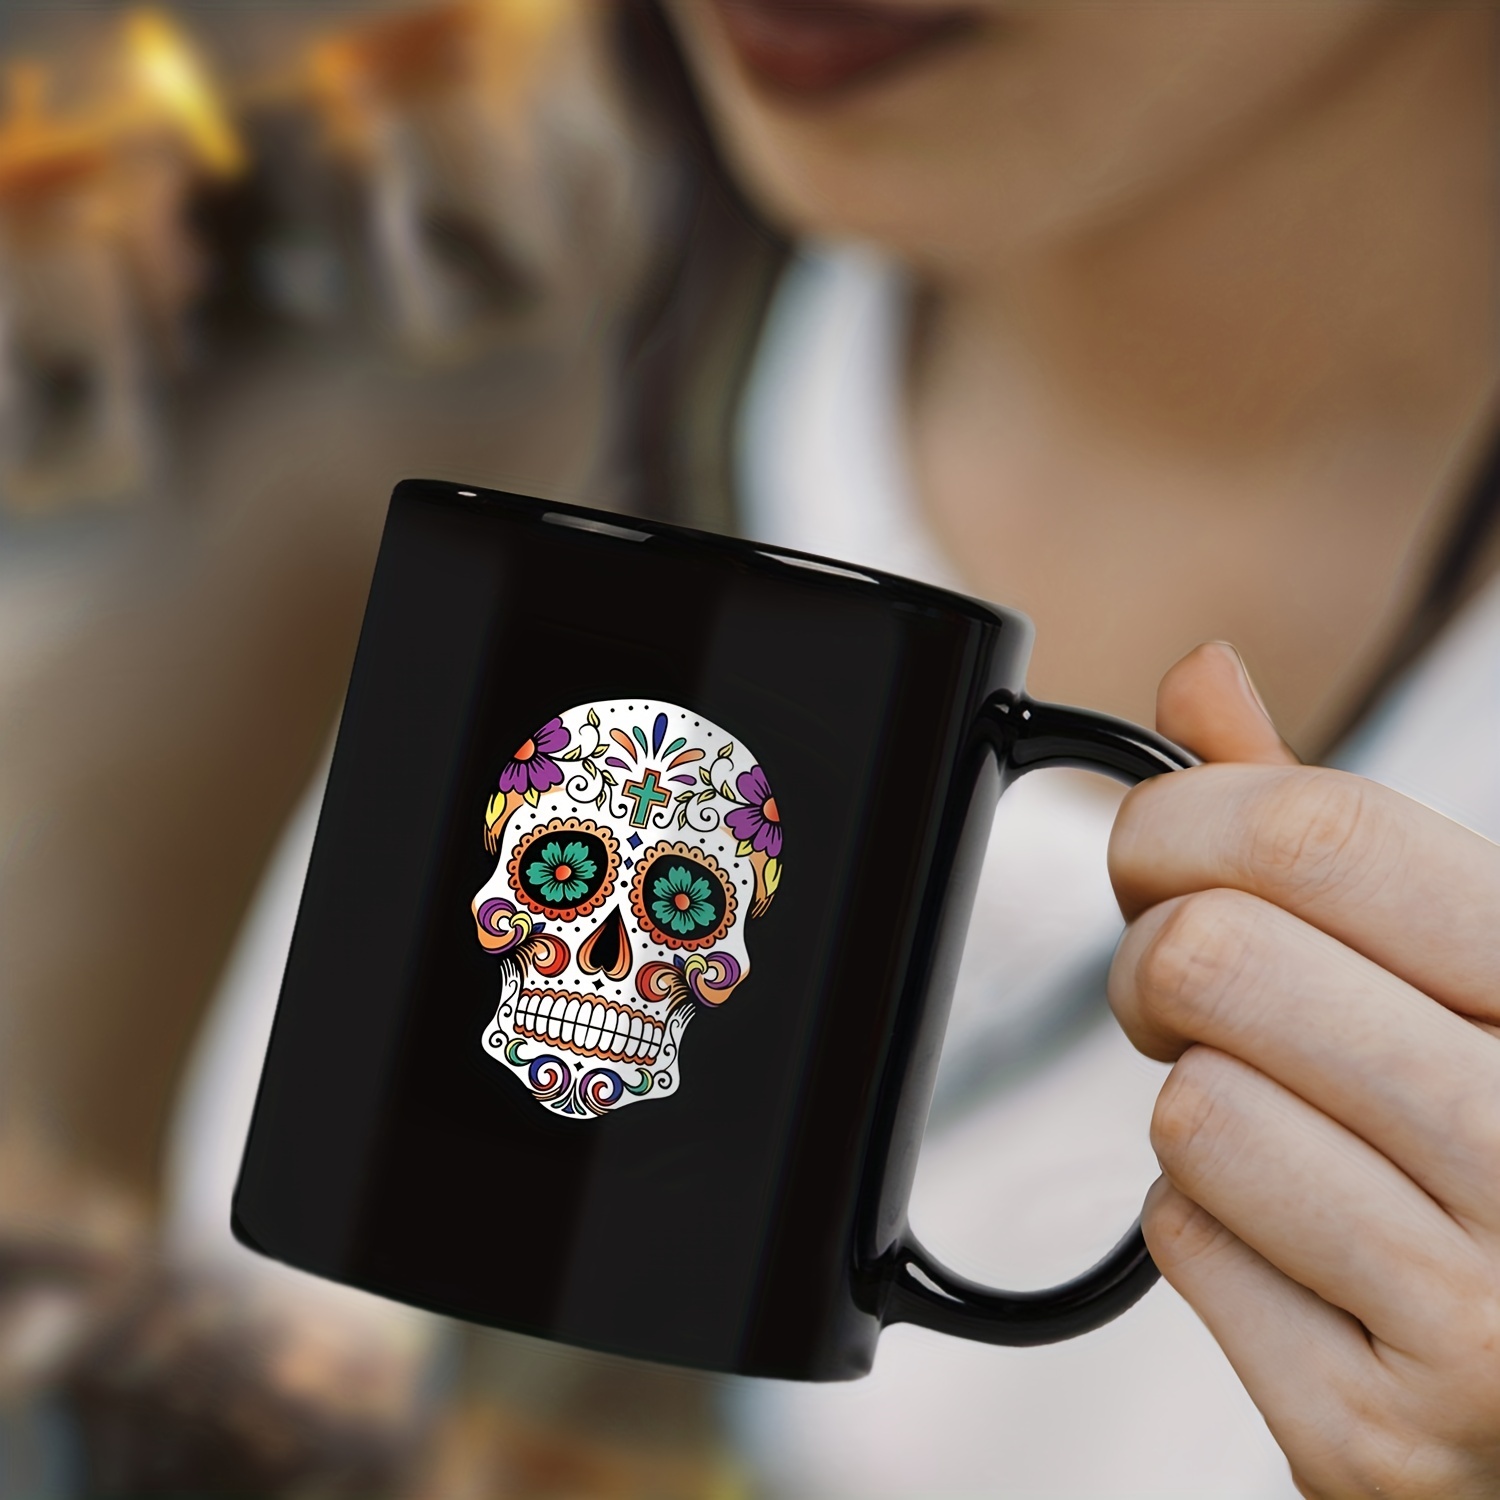 Sugar Skull 11oz Coffee Mug